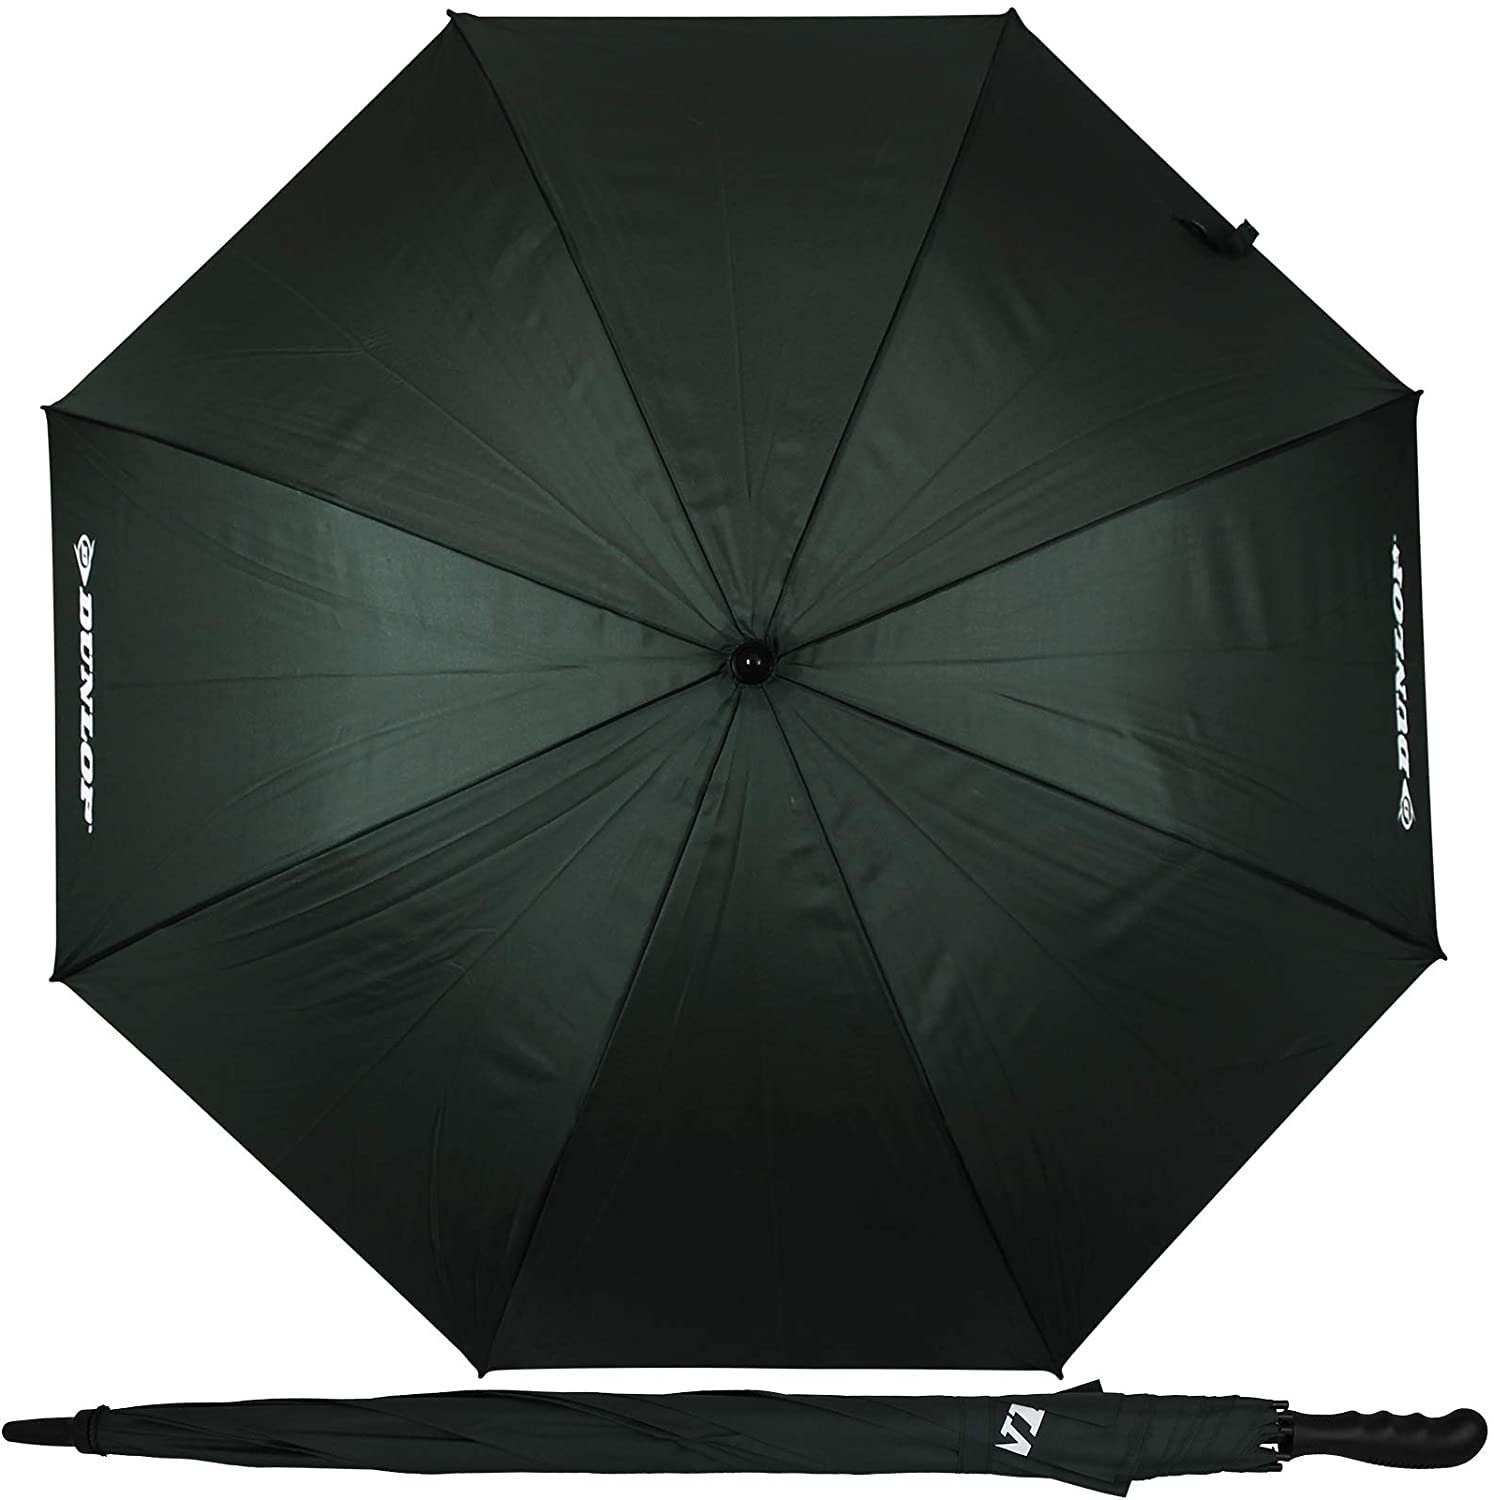 Dokado Partnerschirm XXL Paar Stockschirm grau Familienschirm 2 Dunlop mit Farbwahl für Regenschirm Personen Partnerschirm 130cm Doppelregenschirm